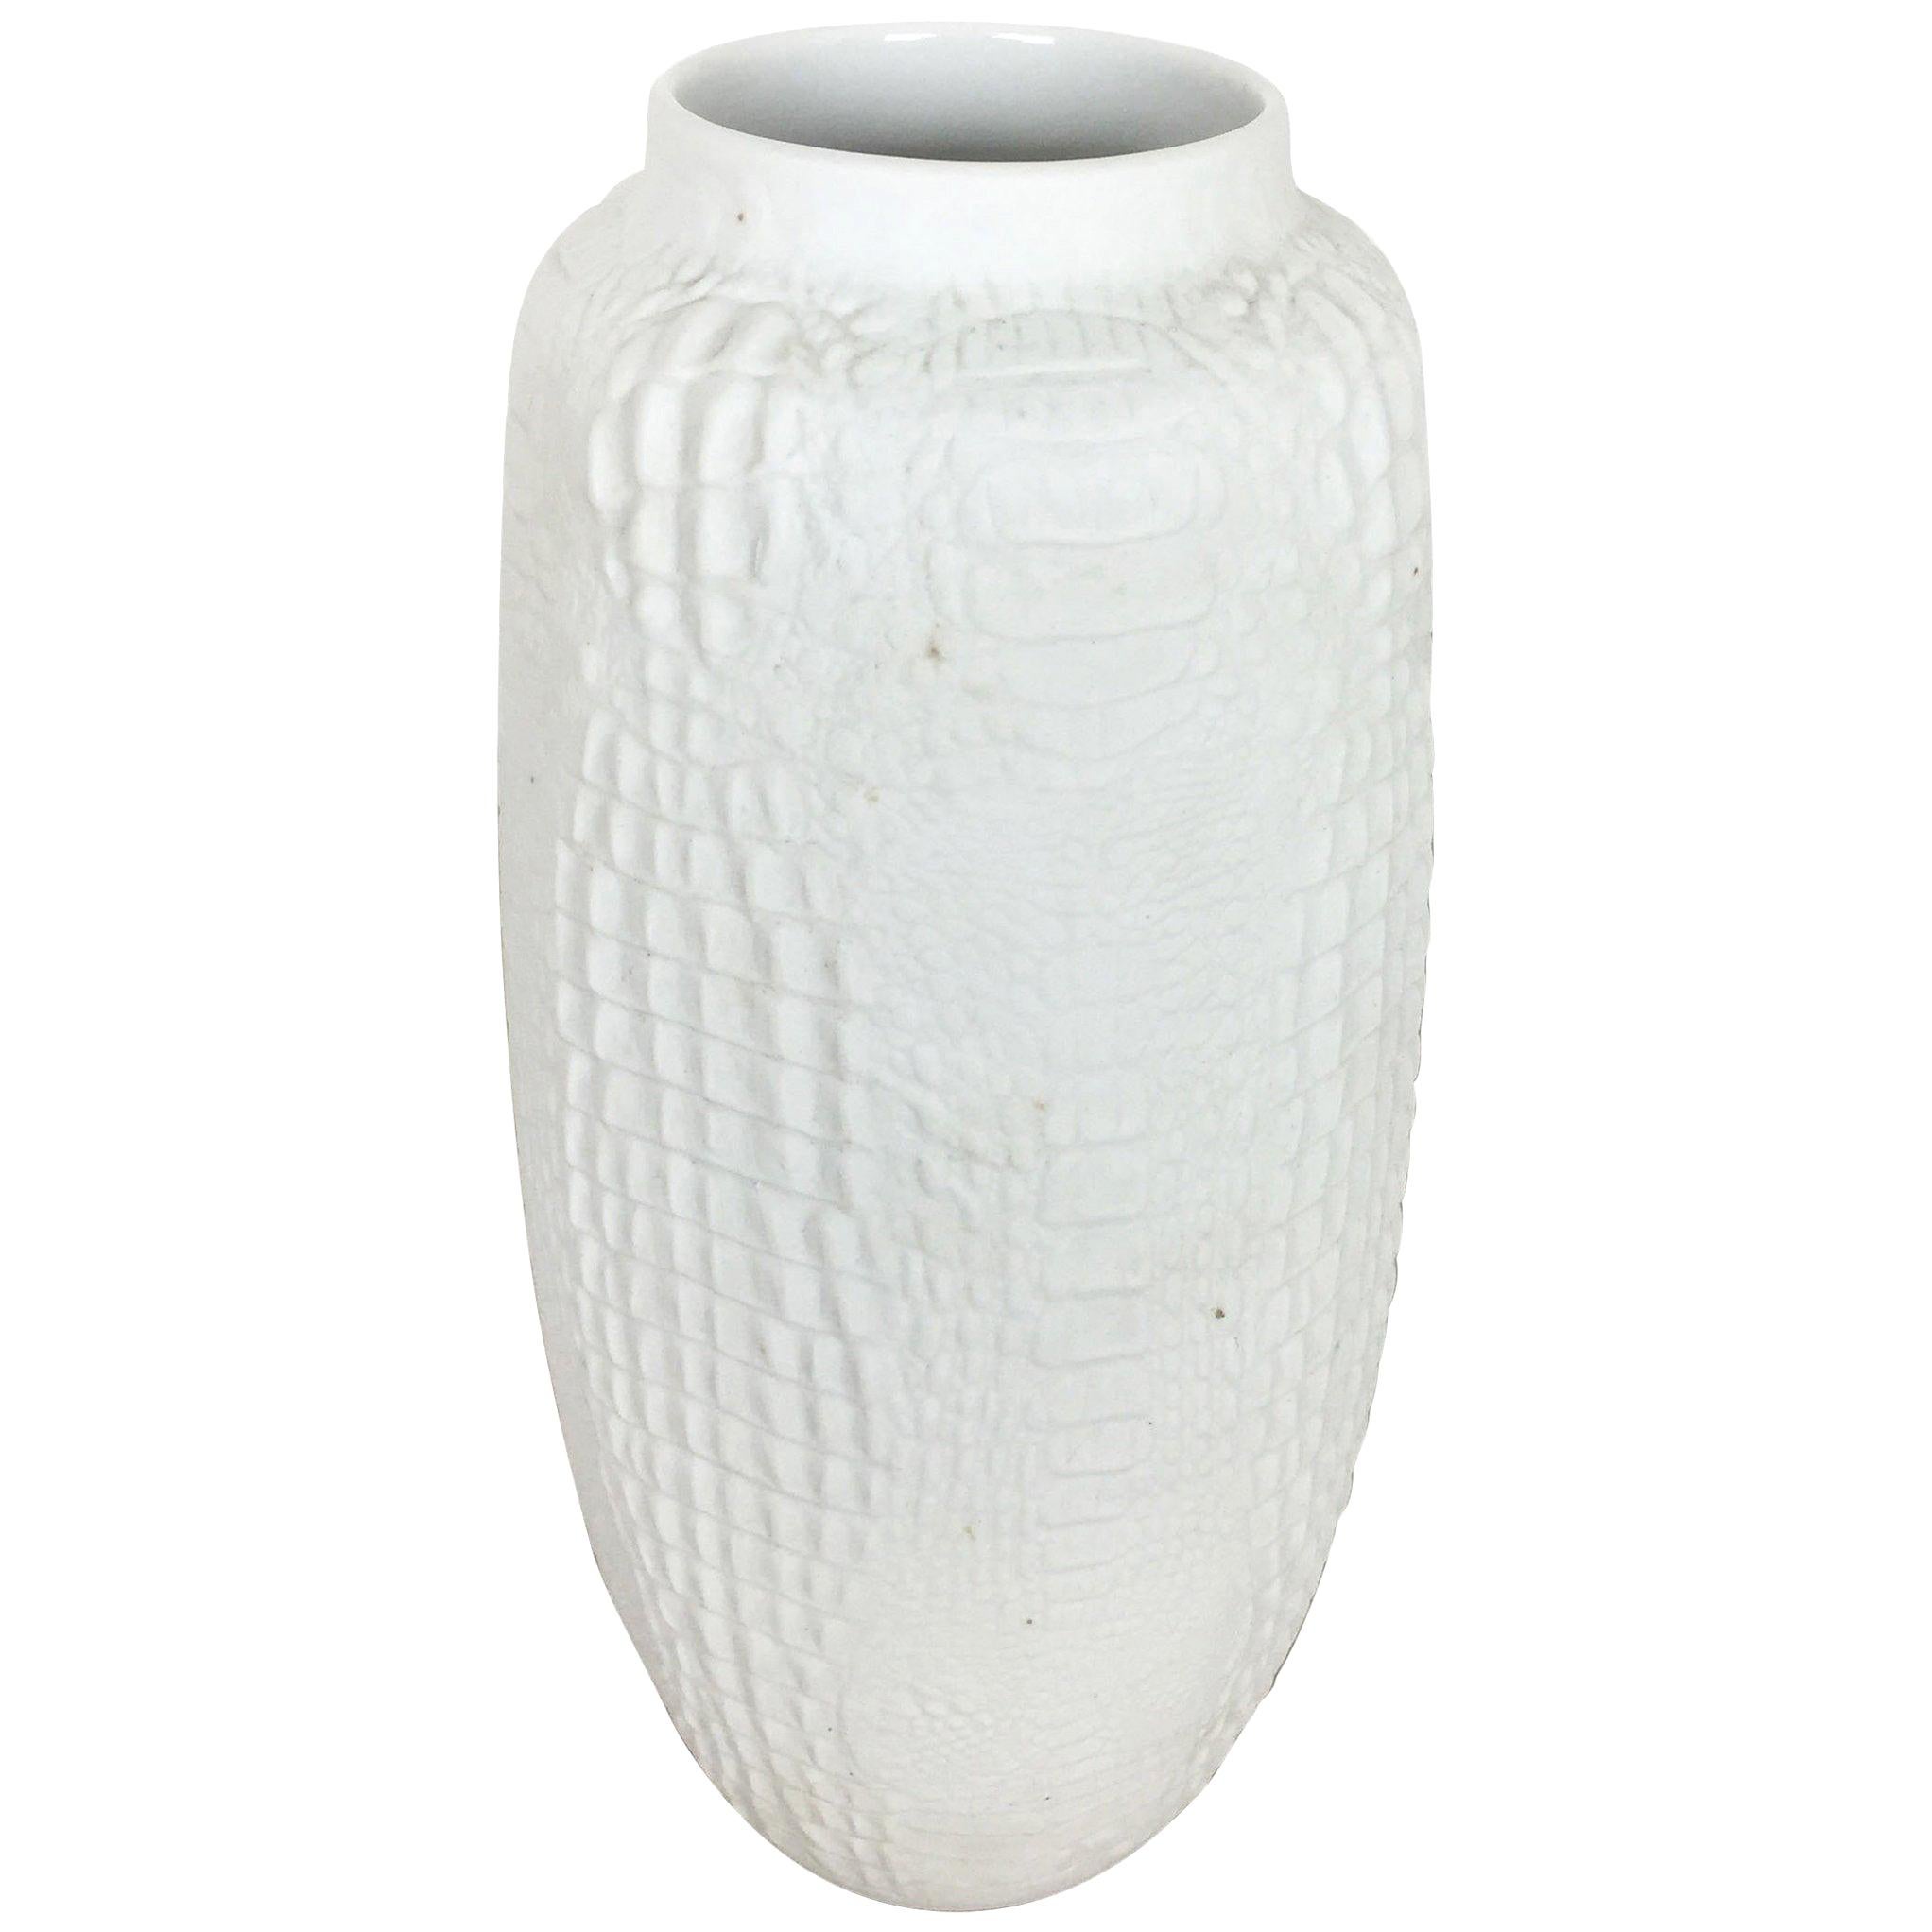 Original 1970s Porcelain Op Art Vase Made by AK Kaiser, Germany For Sale